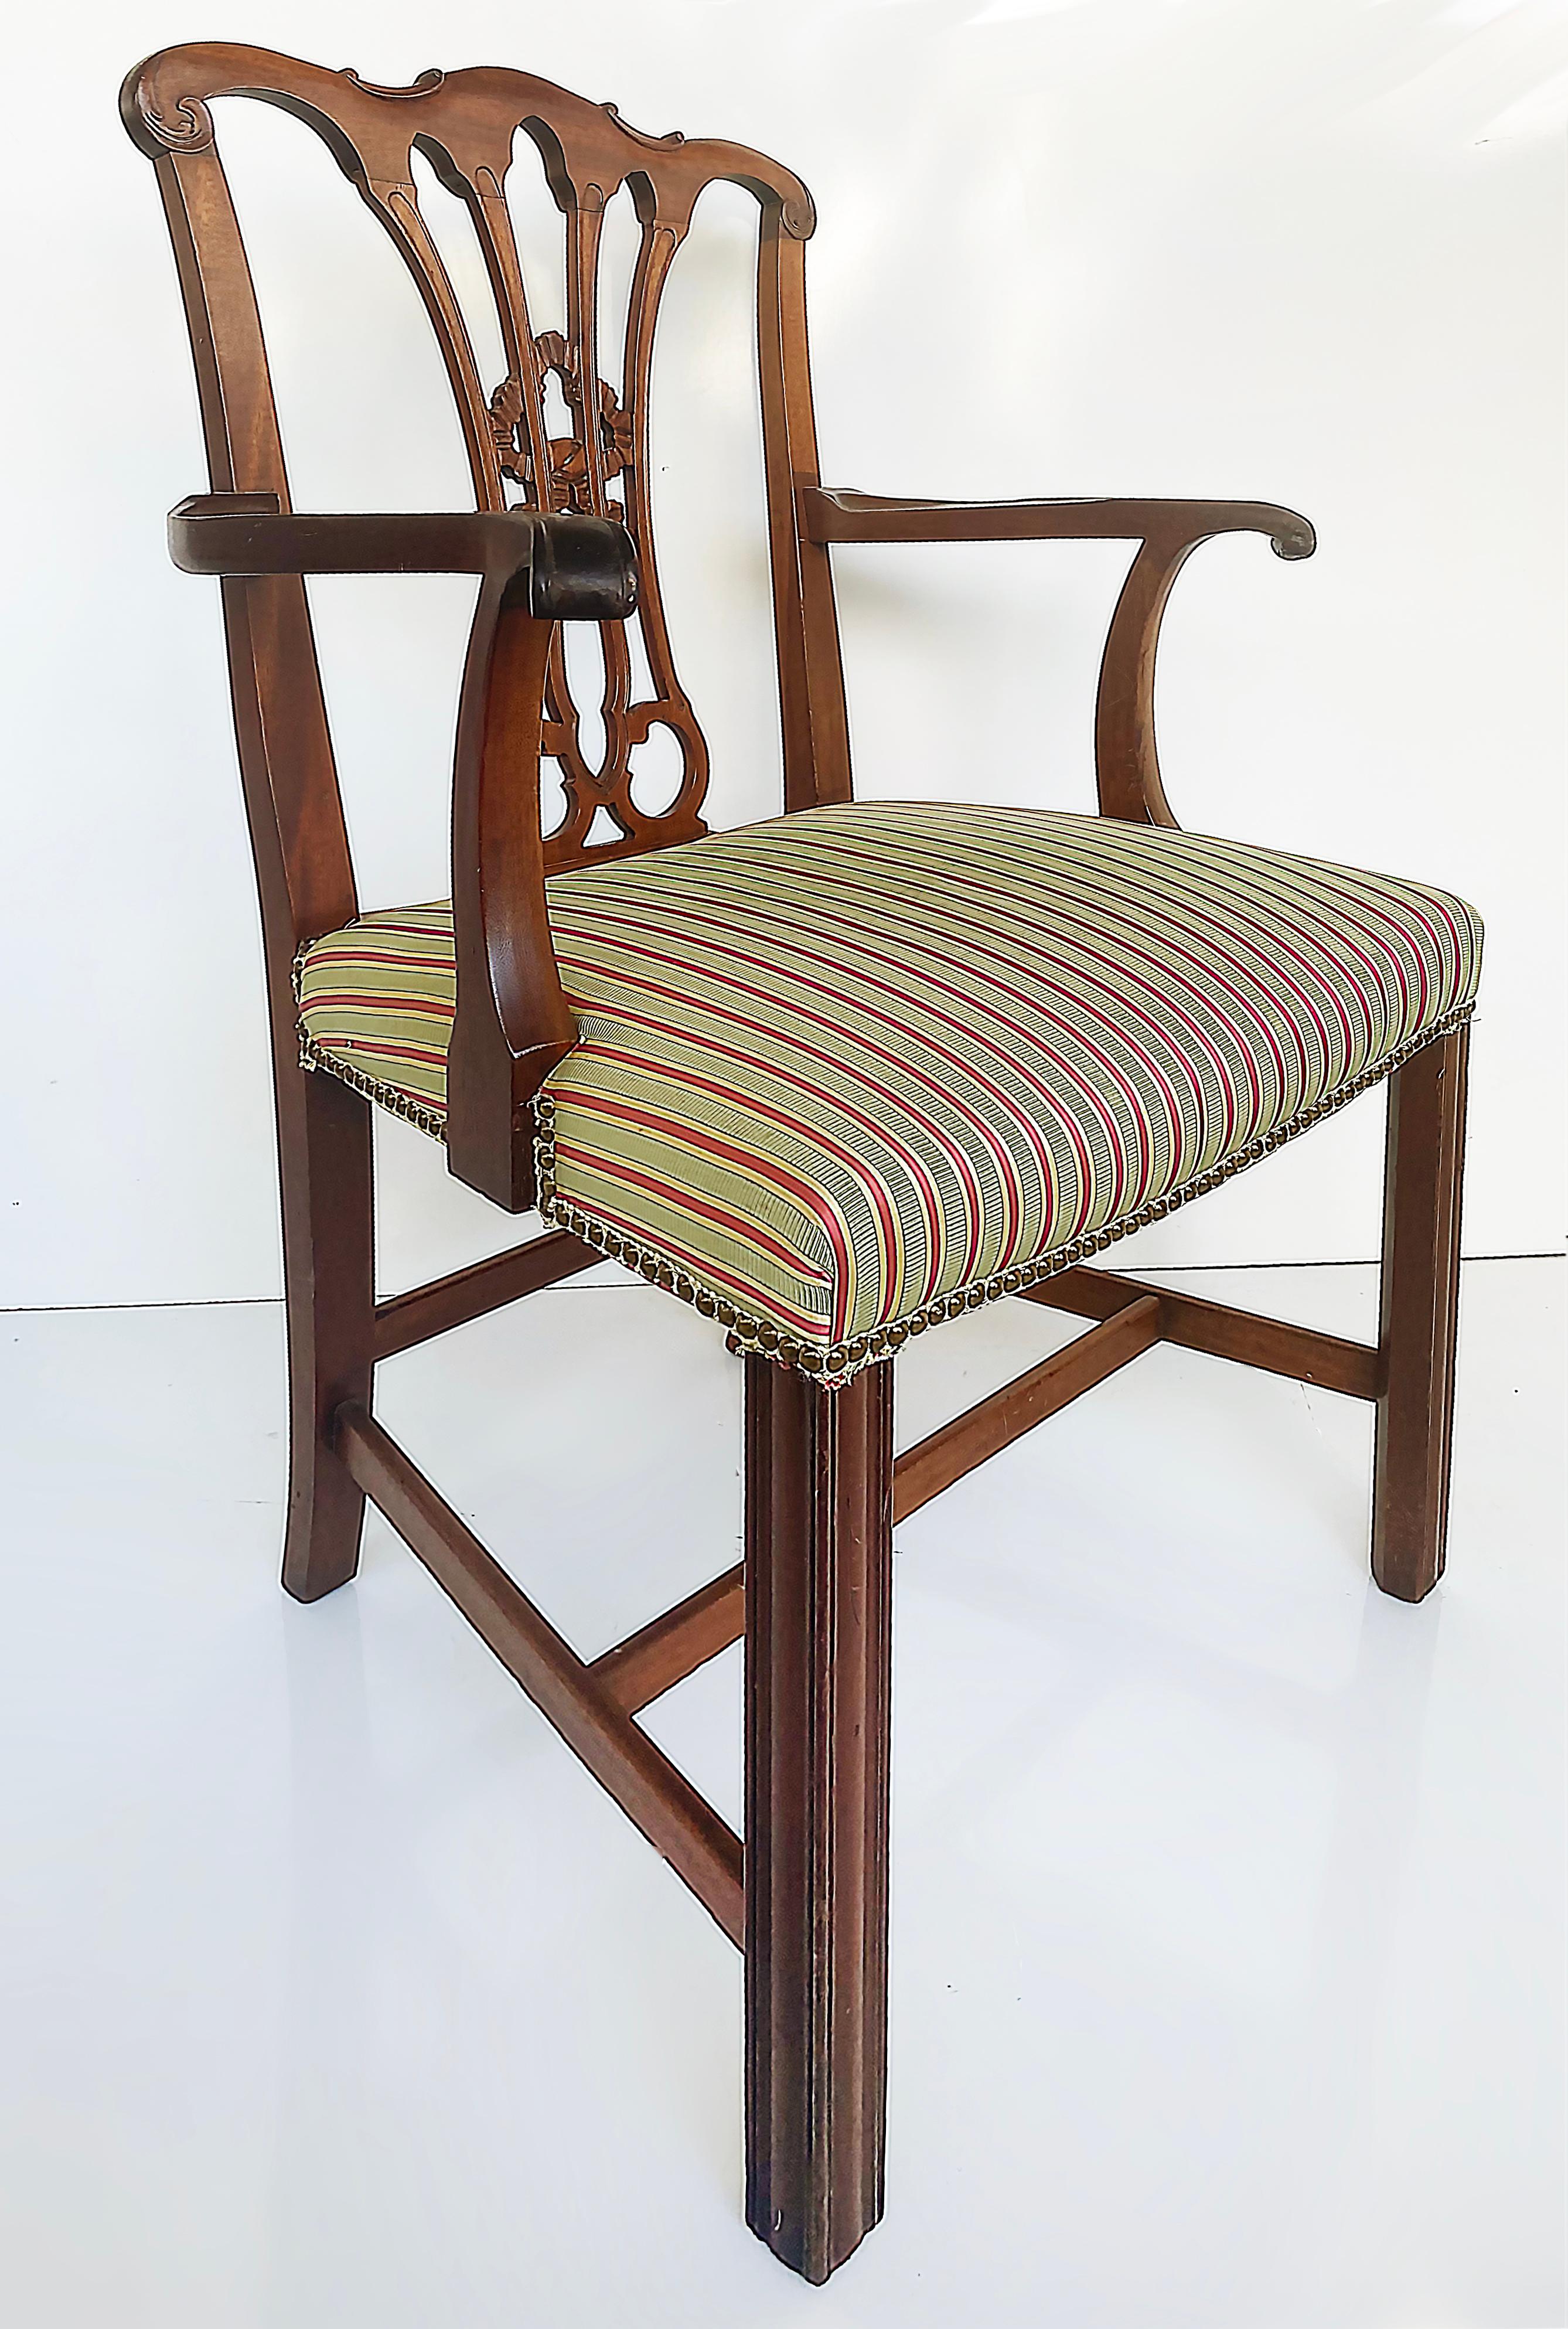 Mahagoni-Sessel im Chippendale-Stil mit Lattenrücken und gepolstertem Sitzkissen

Zum Verkauf angeboten wird ein Mahagoni-Sessel im Chippendale-Stil mit Lattenrücken, gepolstertem Sitzkissen mit gestreiftem Stoff und Nagelkopfdetails aus Messing.